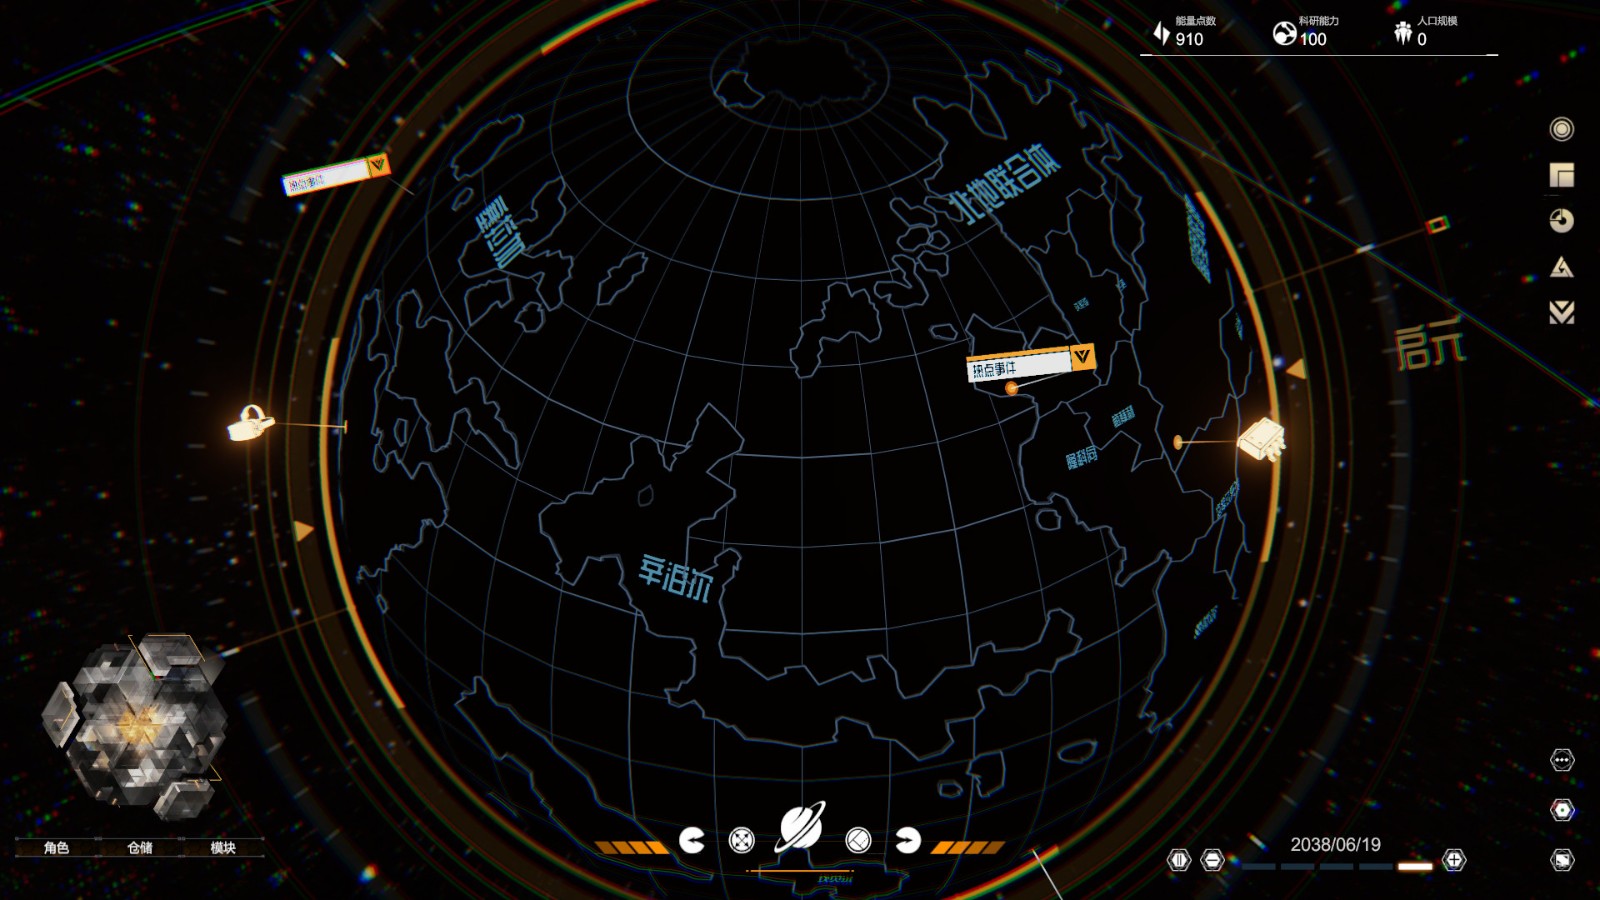 科幻叙事游戏《逐光星火》上架Steam 玩家来引导外星文明 二次世界 第6张